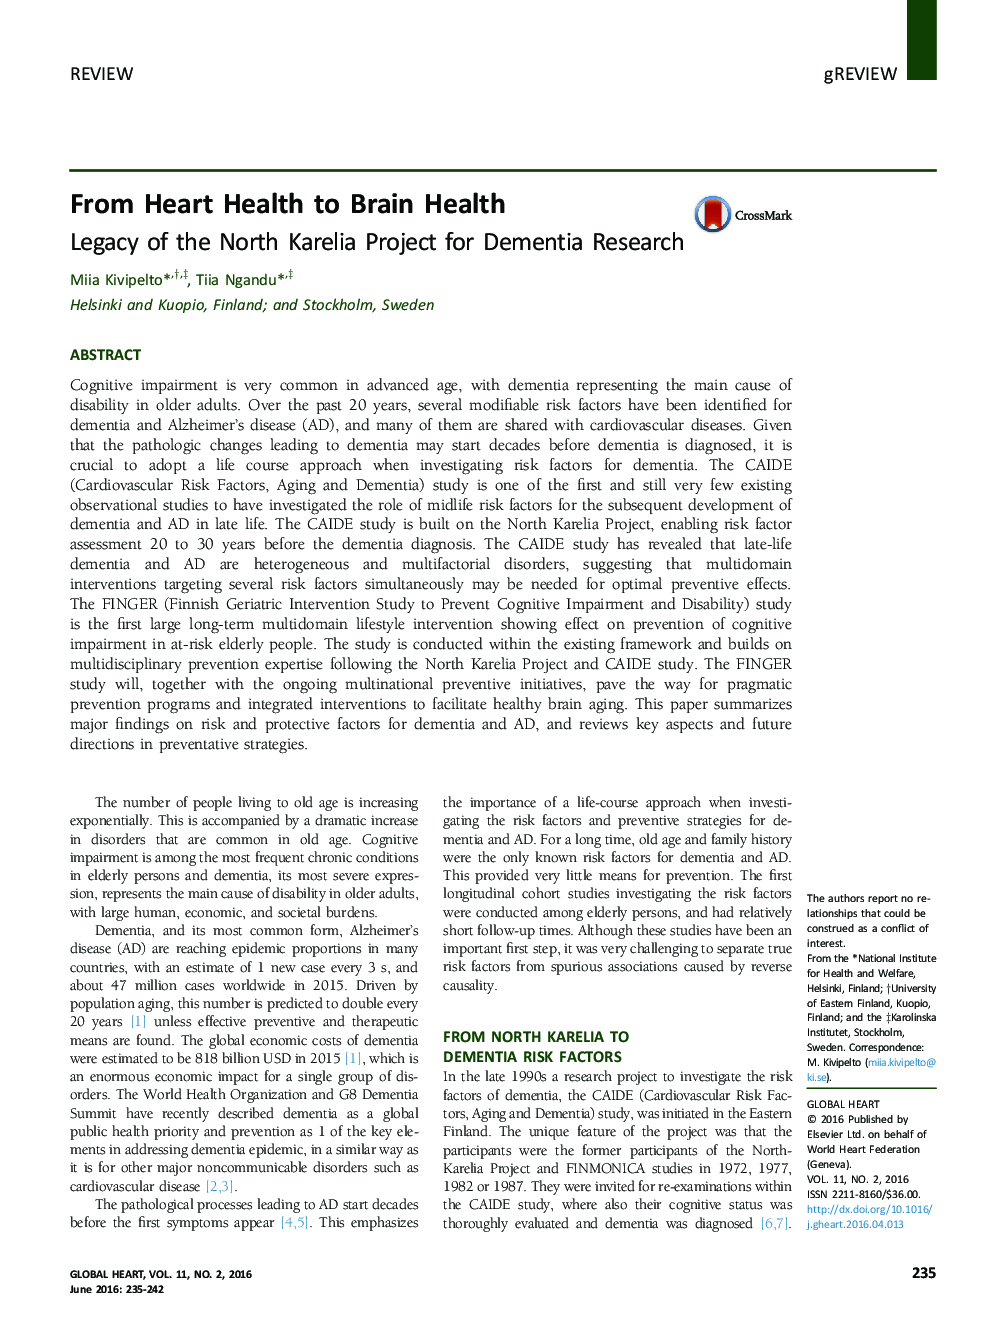 از سلامت قلب به سلامت مغز: میراث پروژه کارلای شمالی برای تحقیقات دمانس 